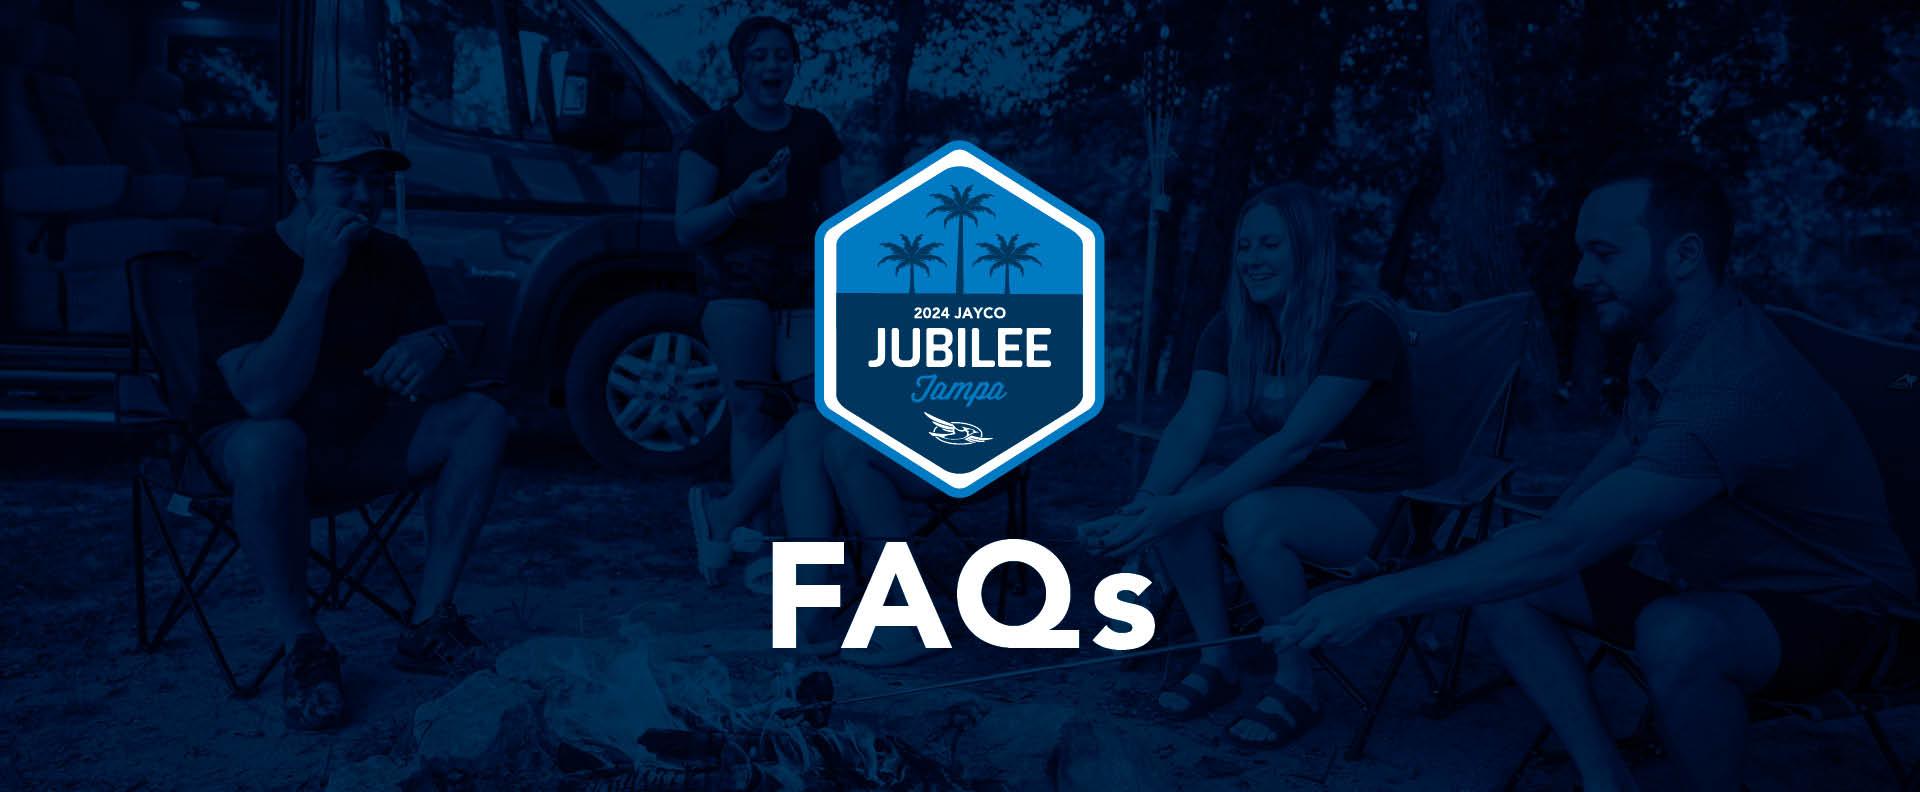 2024 Jayco Jubilee Tampa Registration & FAQ's